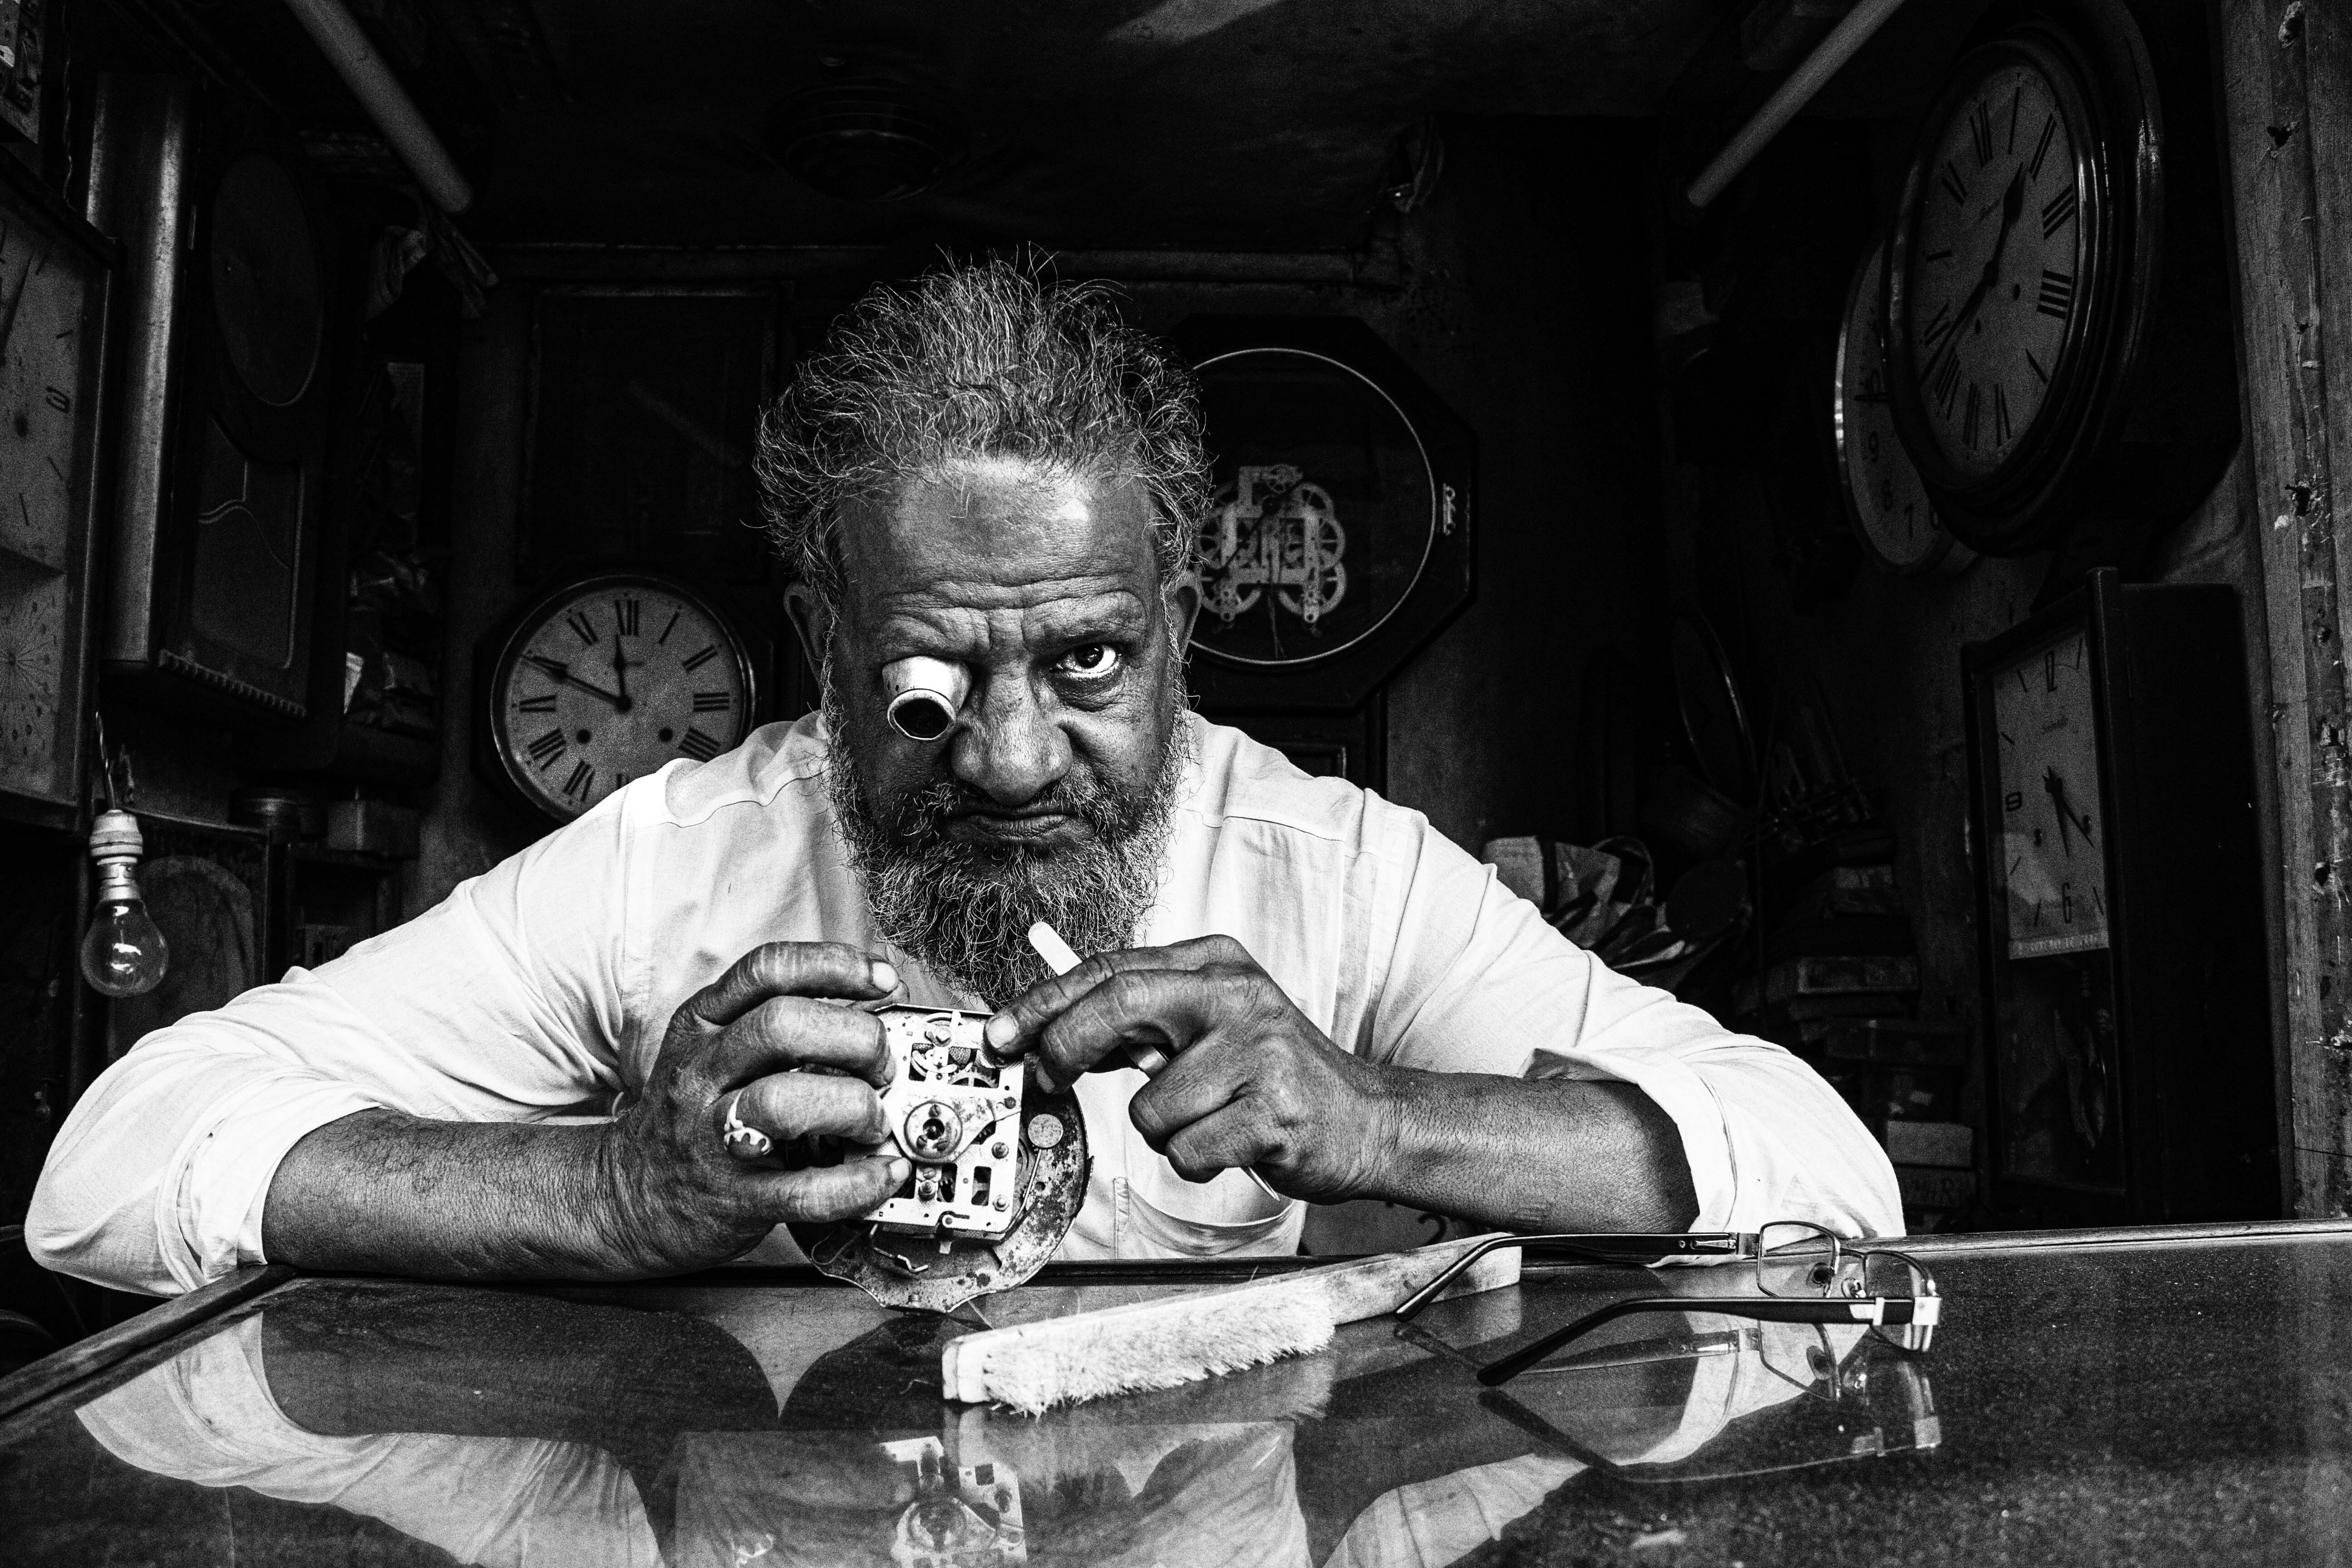 Финалист в категории Люди, 2021. Часовой мастер в семейном магазине в Индии. Автор Sumyadeep Kundu